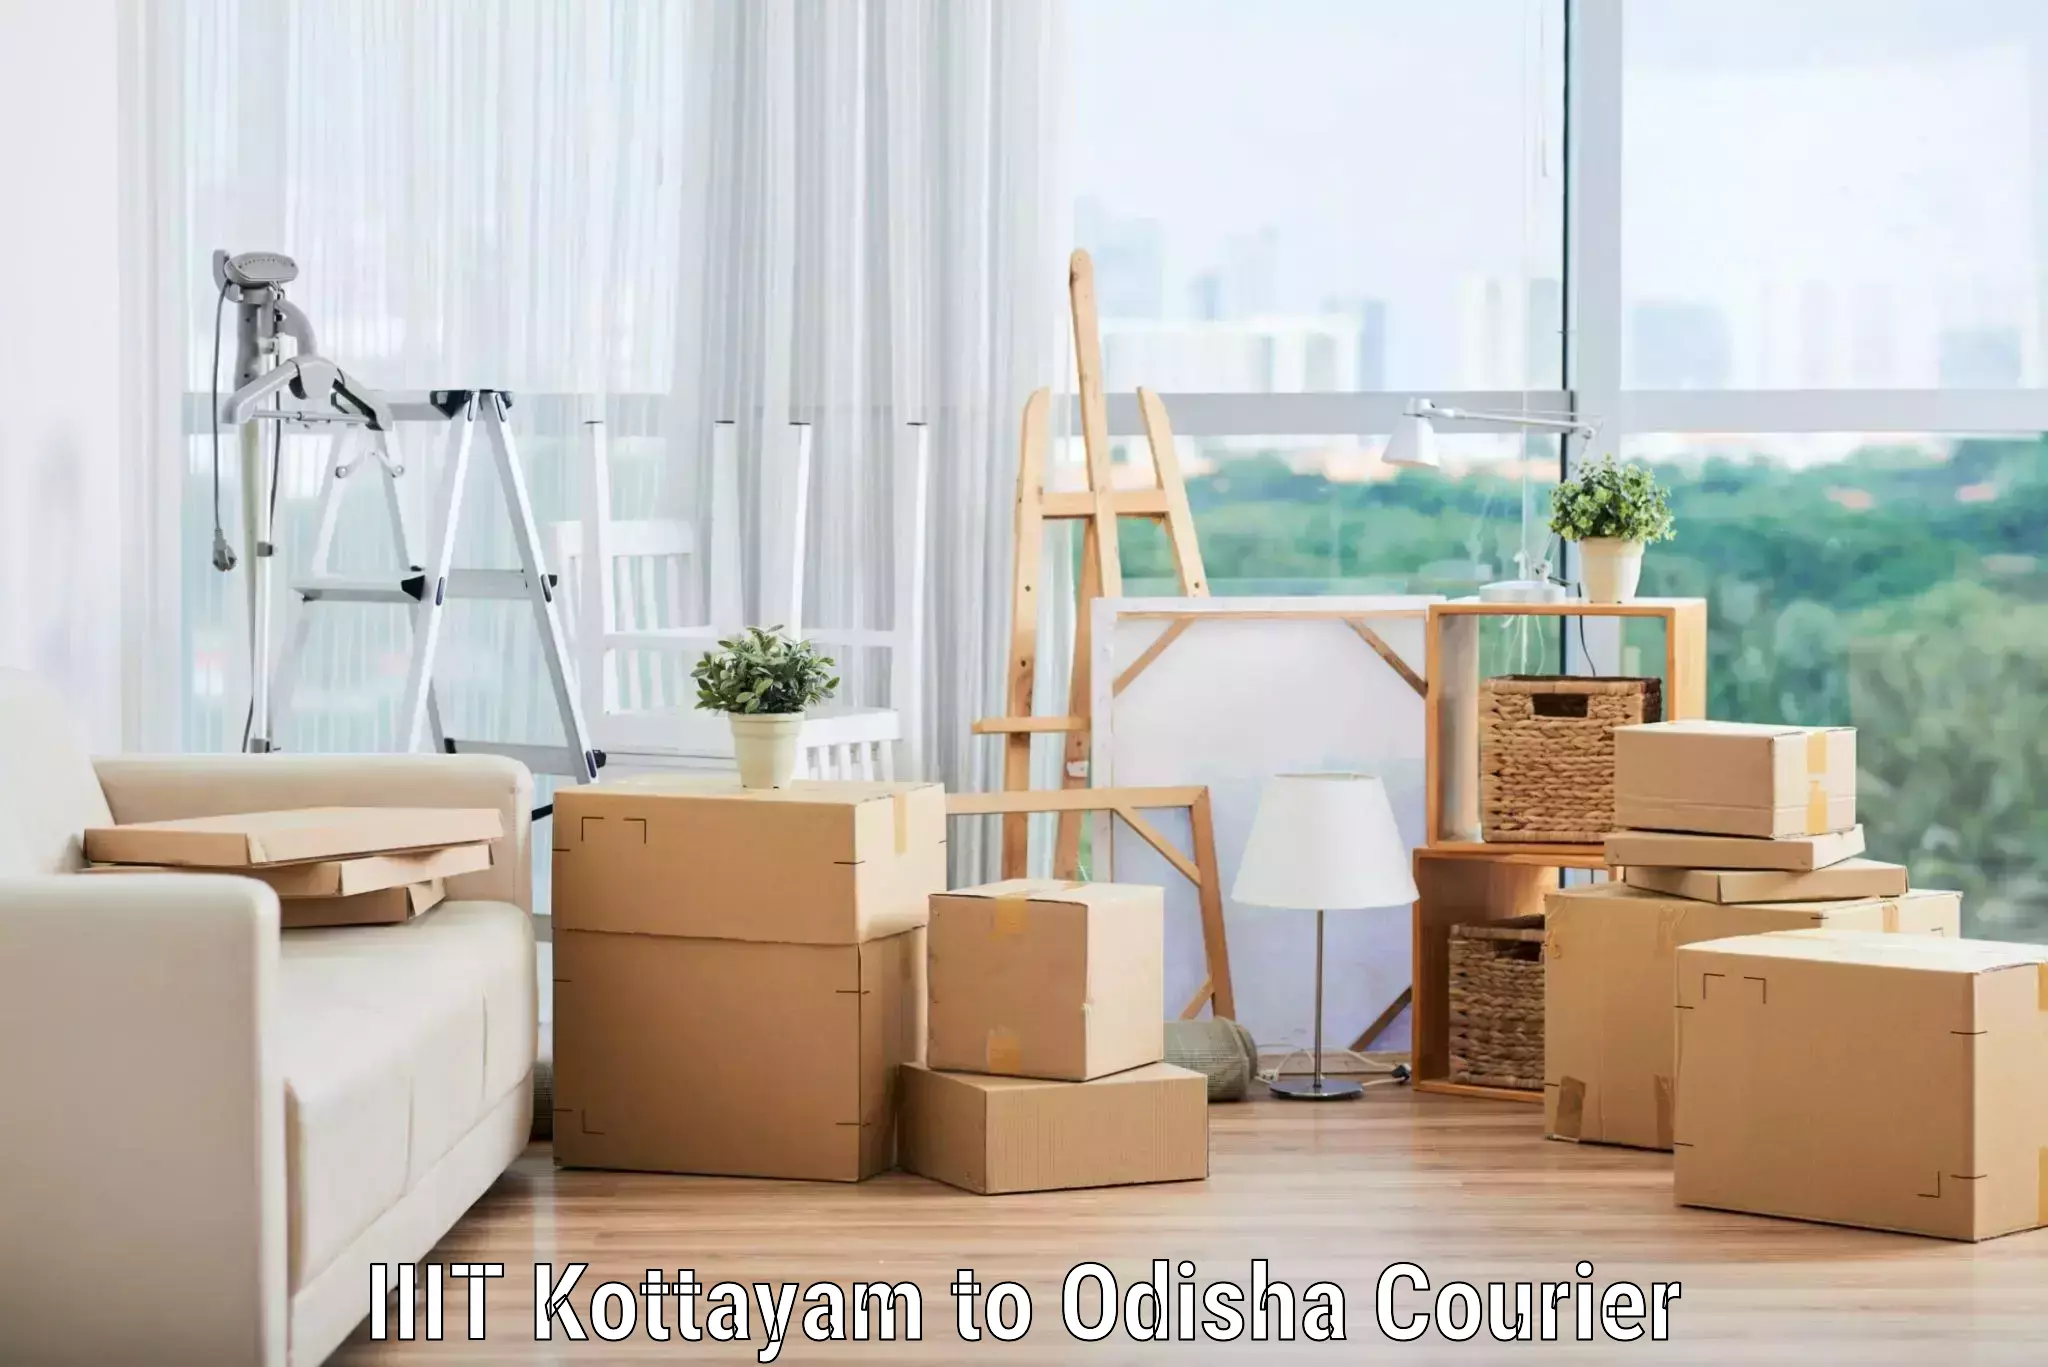 Home furniture relocation IIIT Kottayam to Odisha